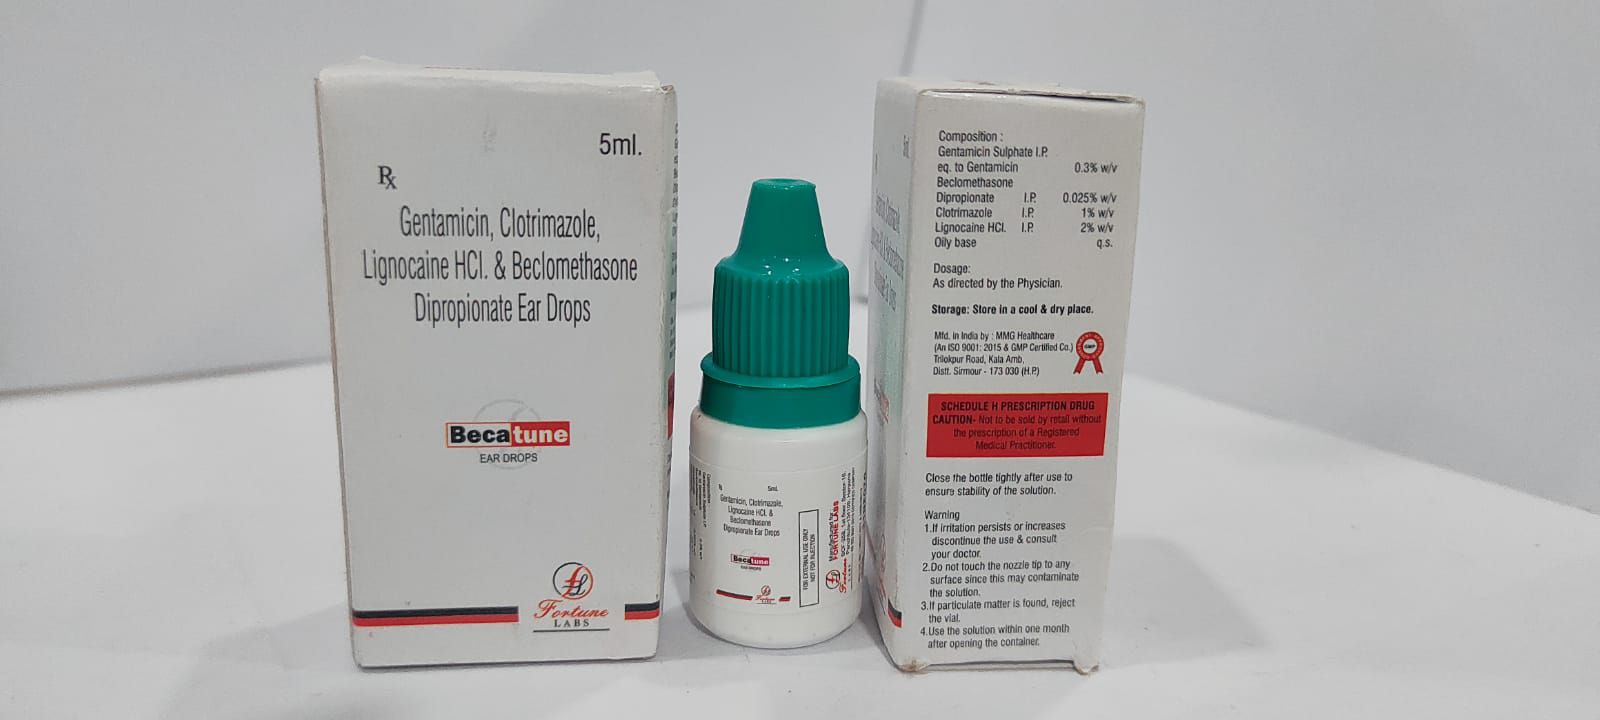 gentamicin sulphate 0.3% w/v + beclomethasone dipropionate 0.025% w/v + clotrimazole 1% w/v + lignocaine hcl 2% w/v